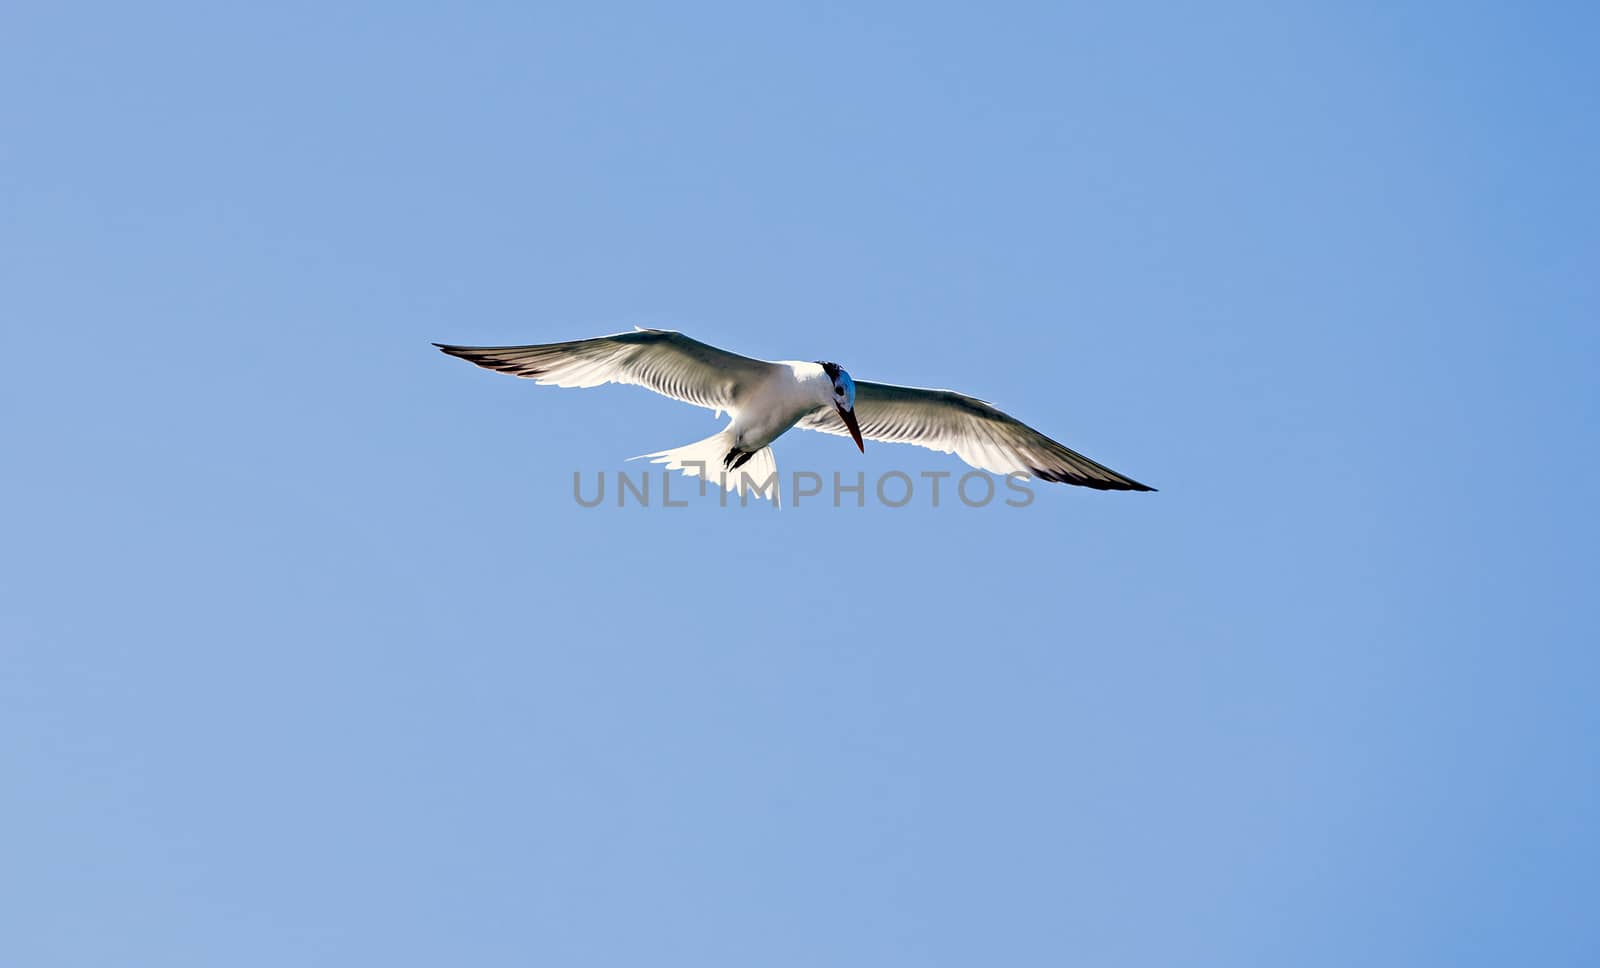 Caspian Tern flying by